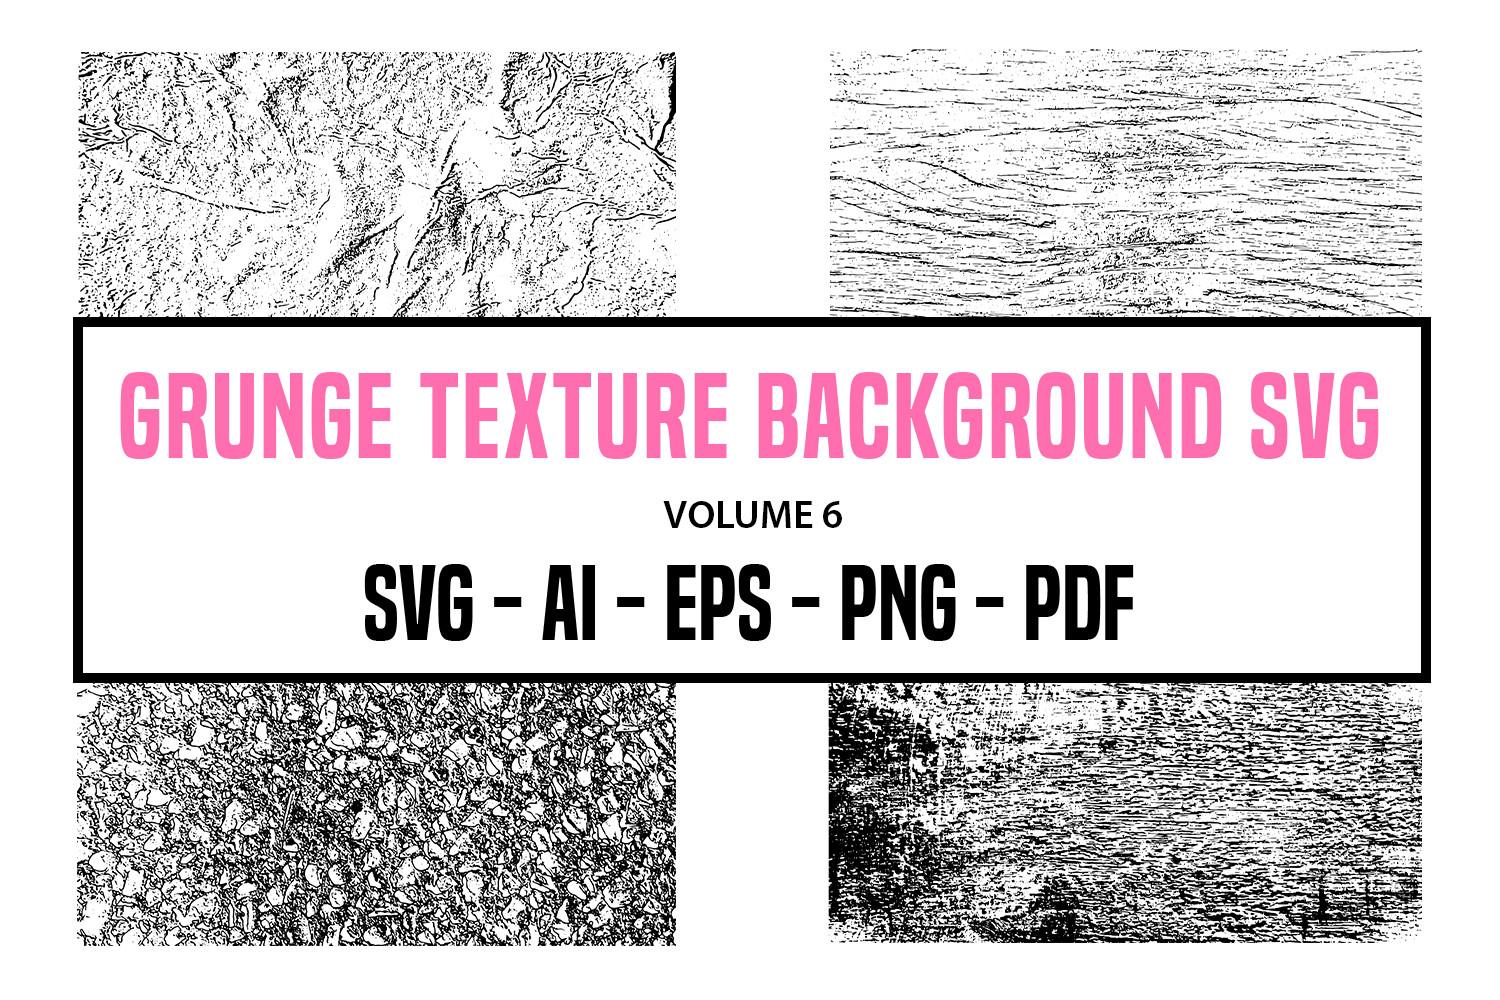 Grunge Texture Background SVG - Volume 6